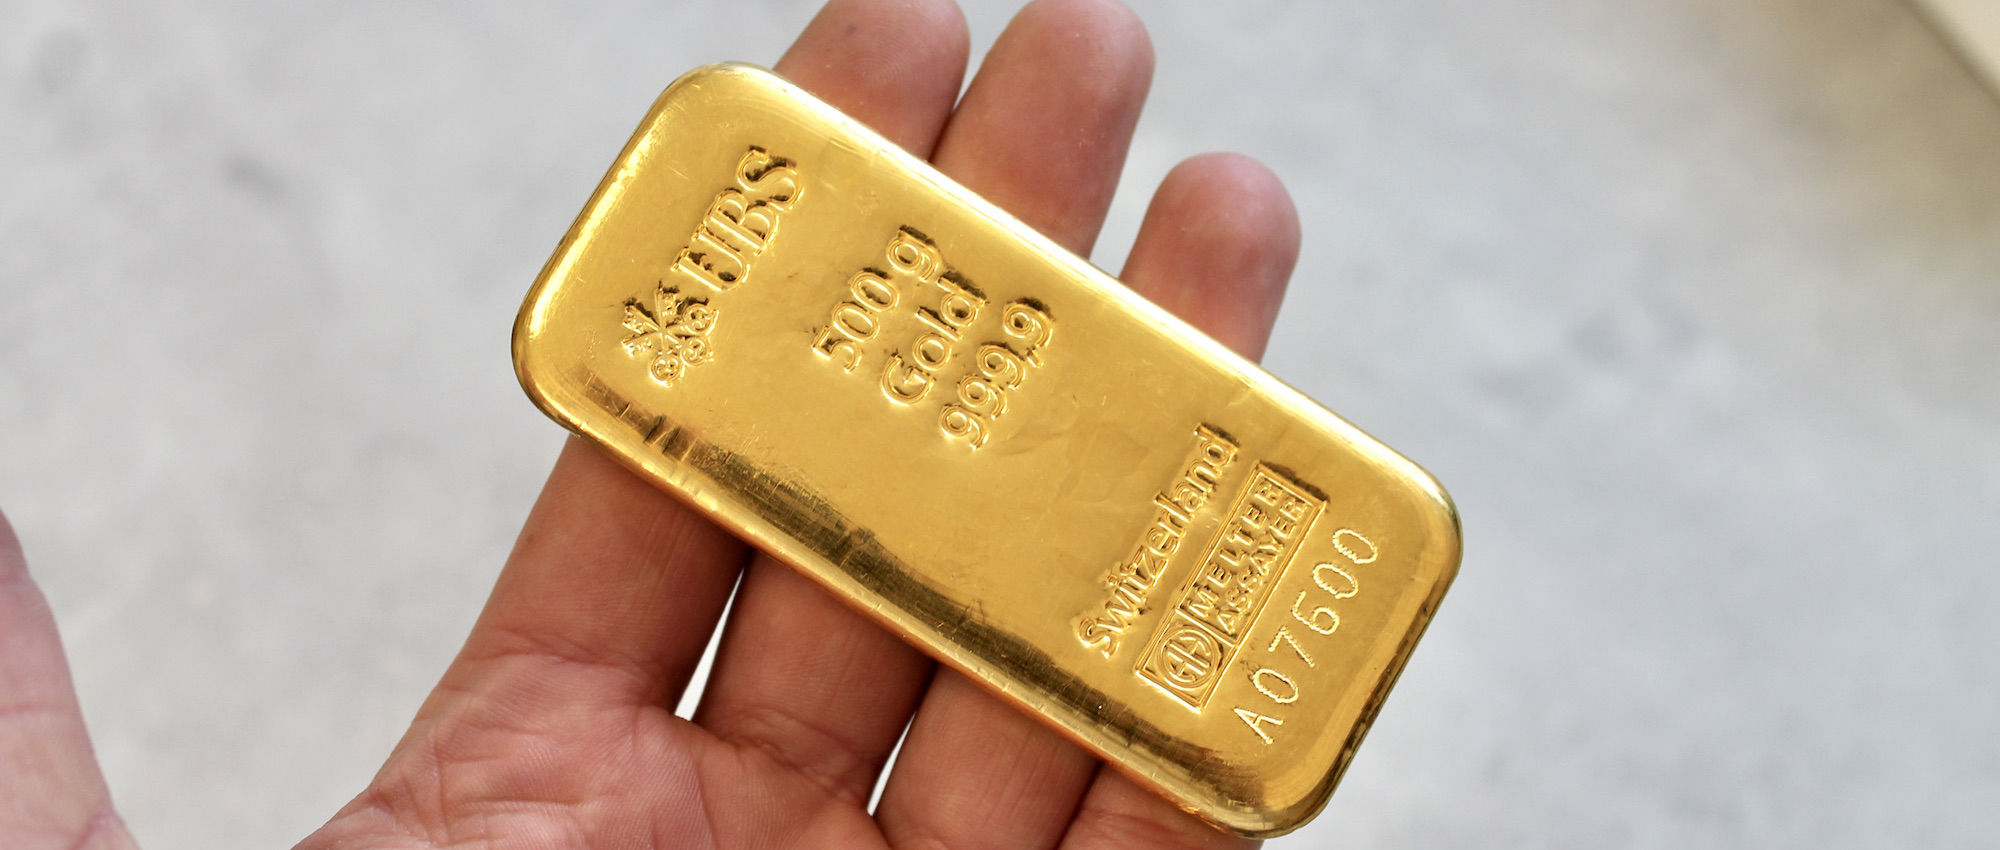 bevind zich Dictatuur Verbetering Goudbaren verkopen - Verkoop direct uw goud tegen de huidige koers